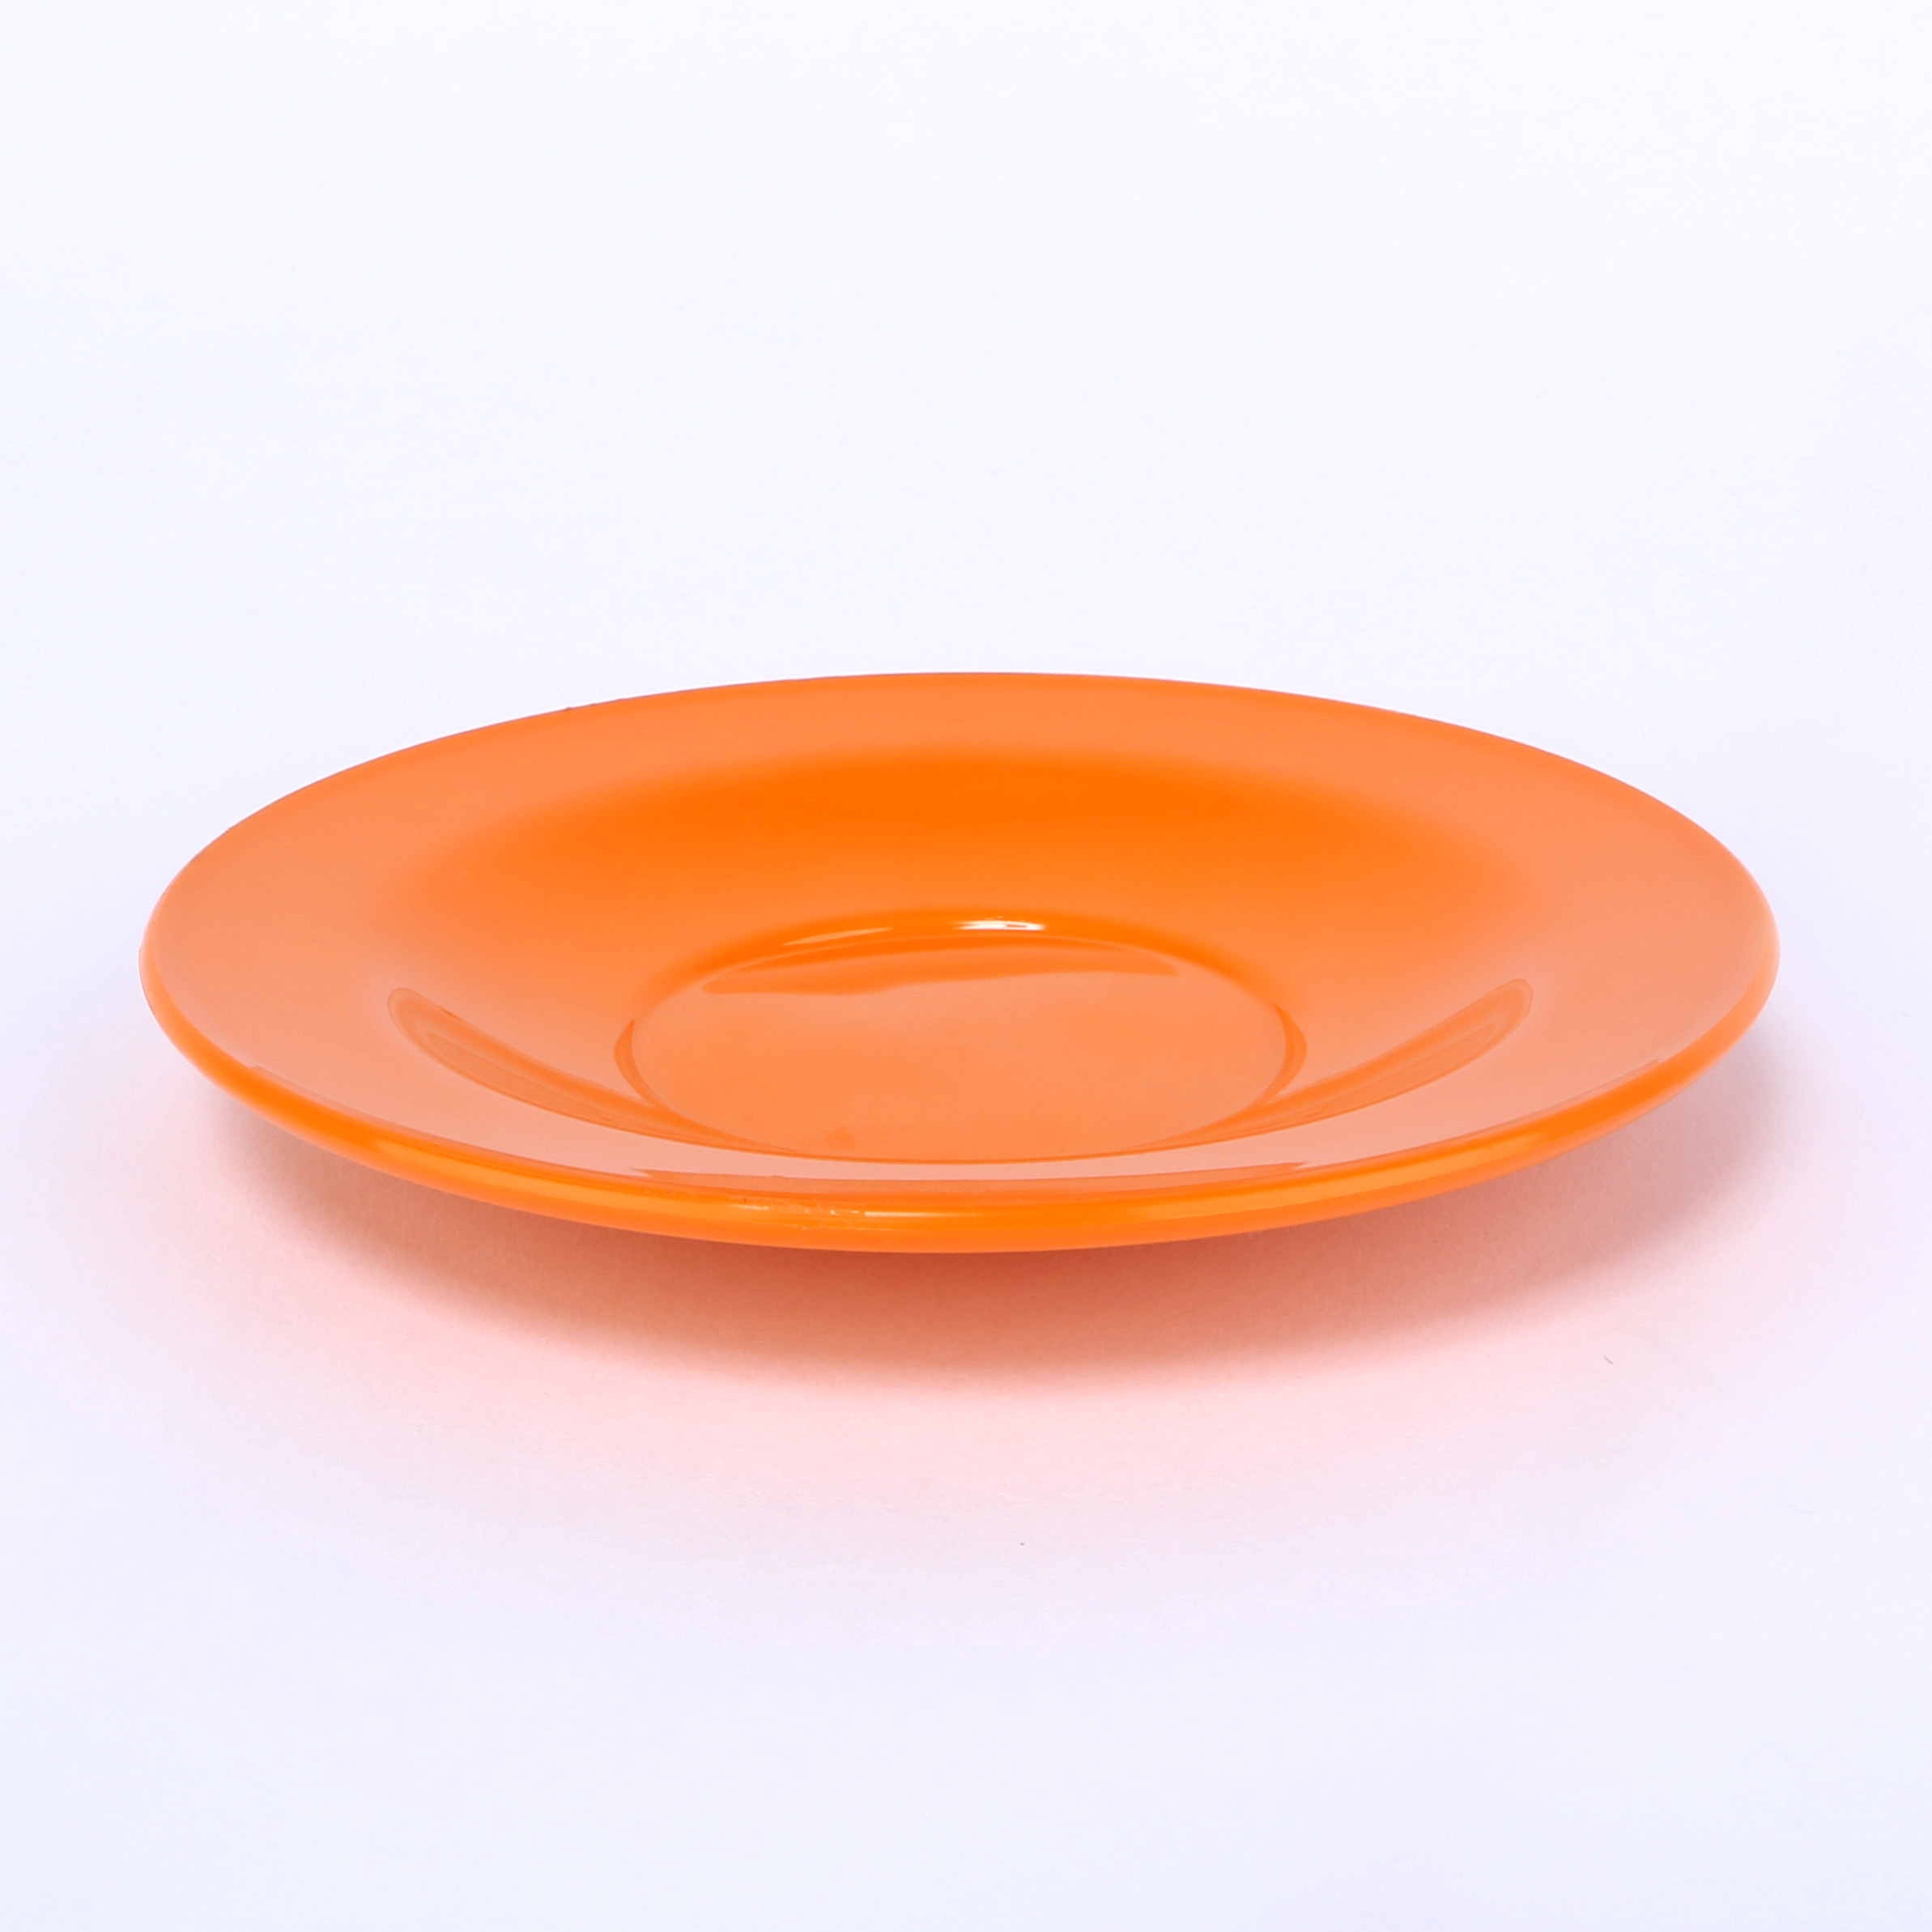 vaLon Zephyr Untertasse 13,5 cm aus schadstofffreiem Kunststoff in der Farbe orange.